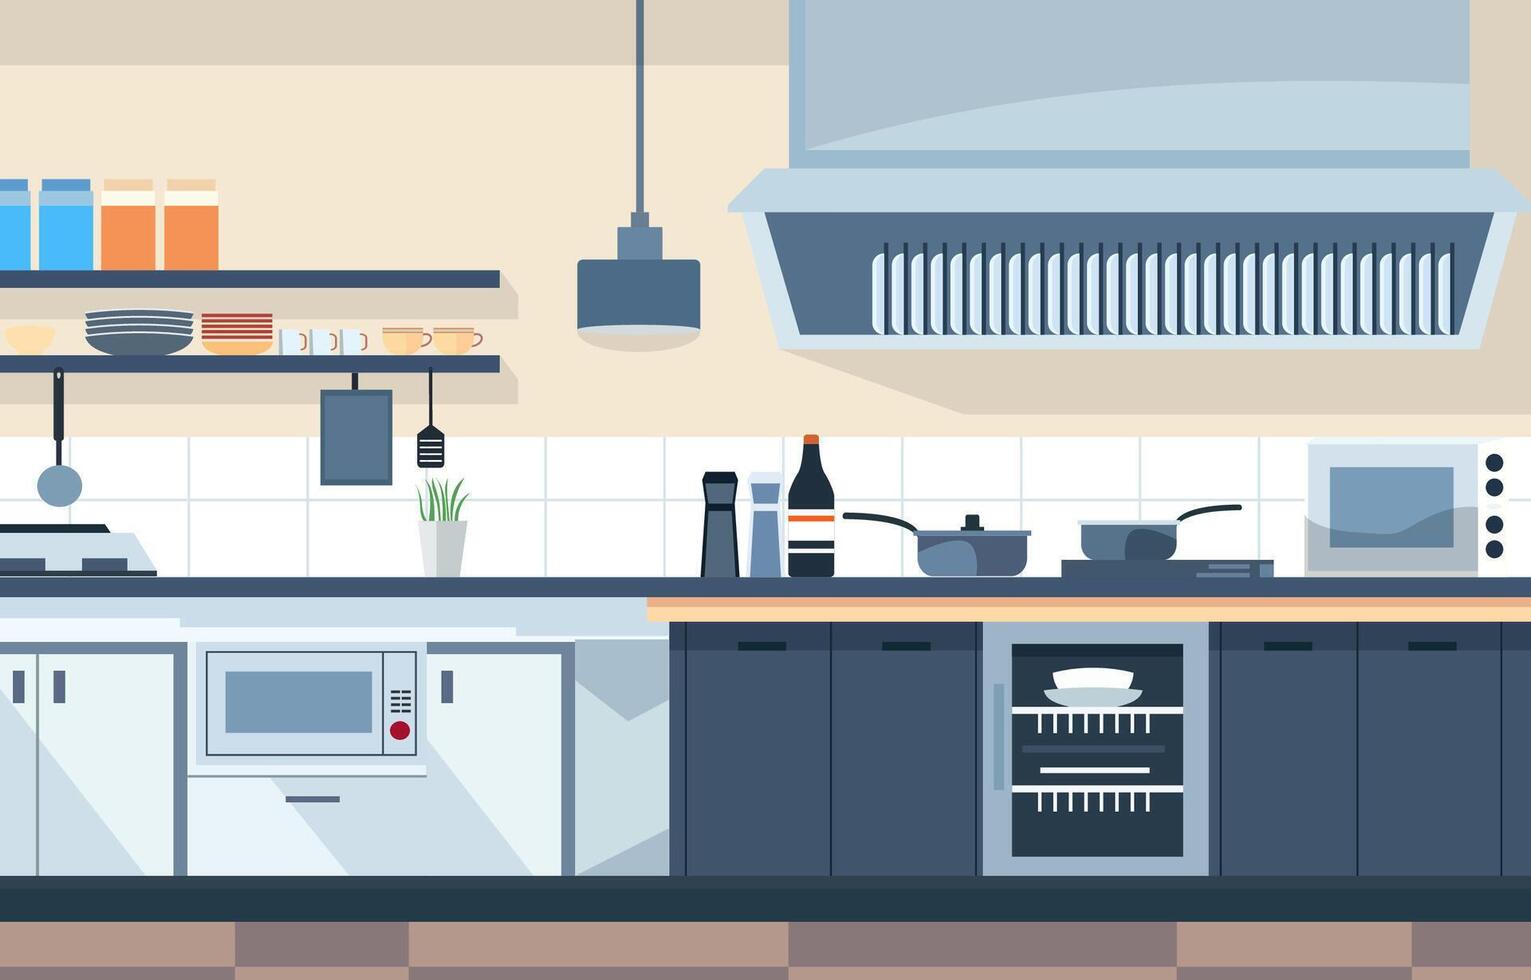 platt design av modern kök interiör i restaurang med lagring hyllor och spis vektor